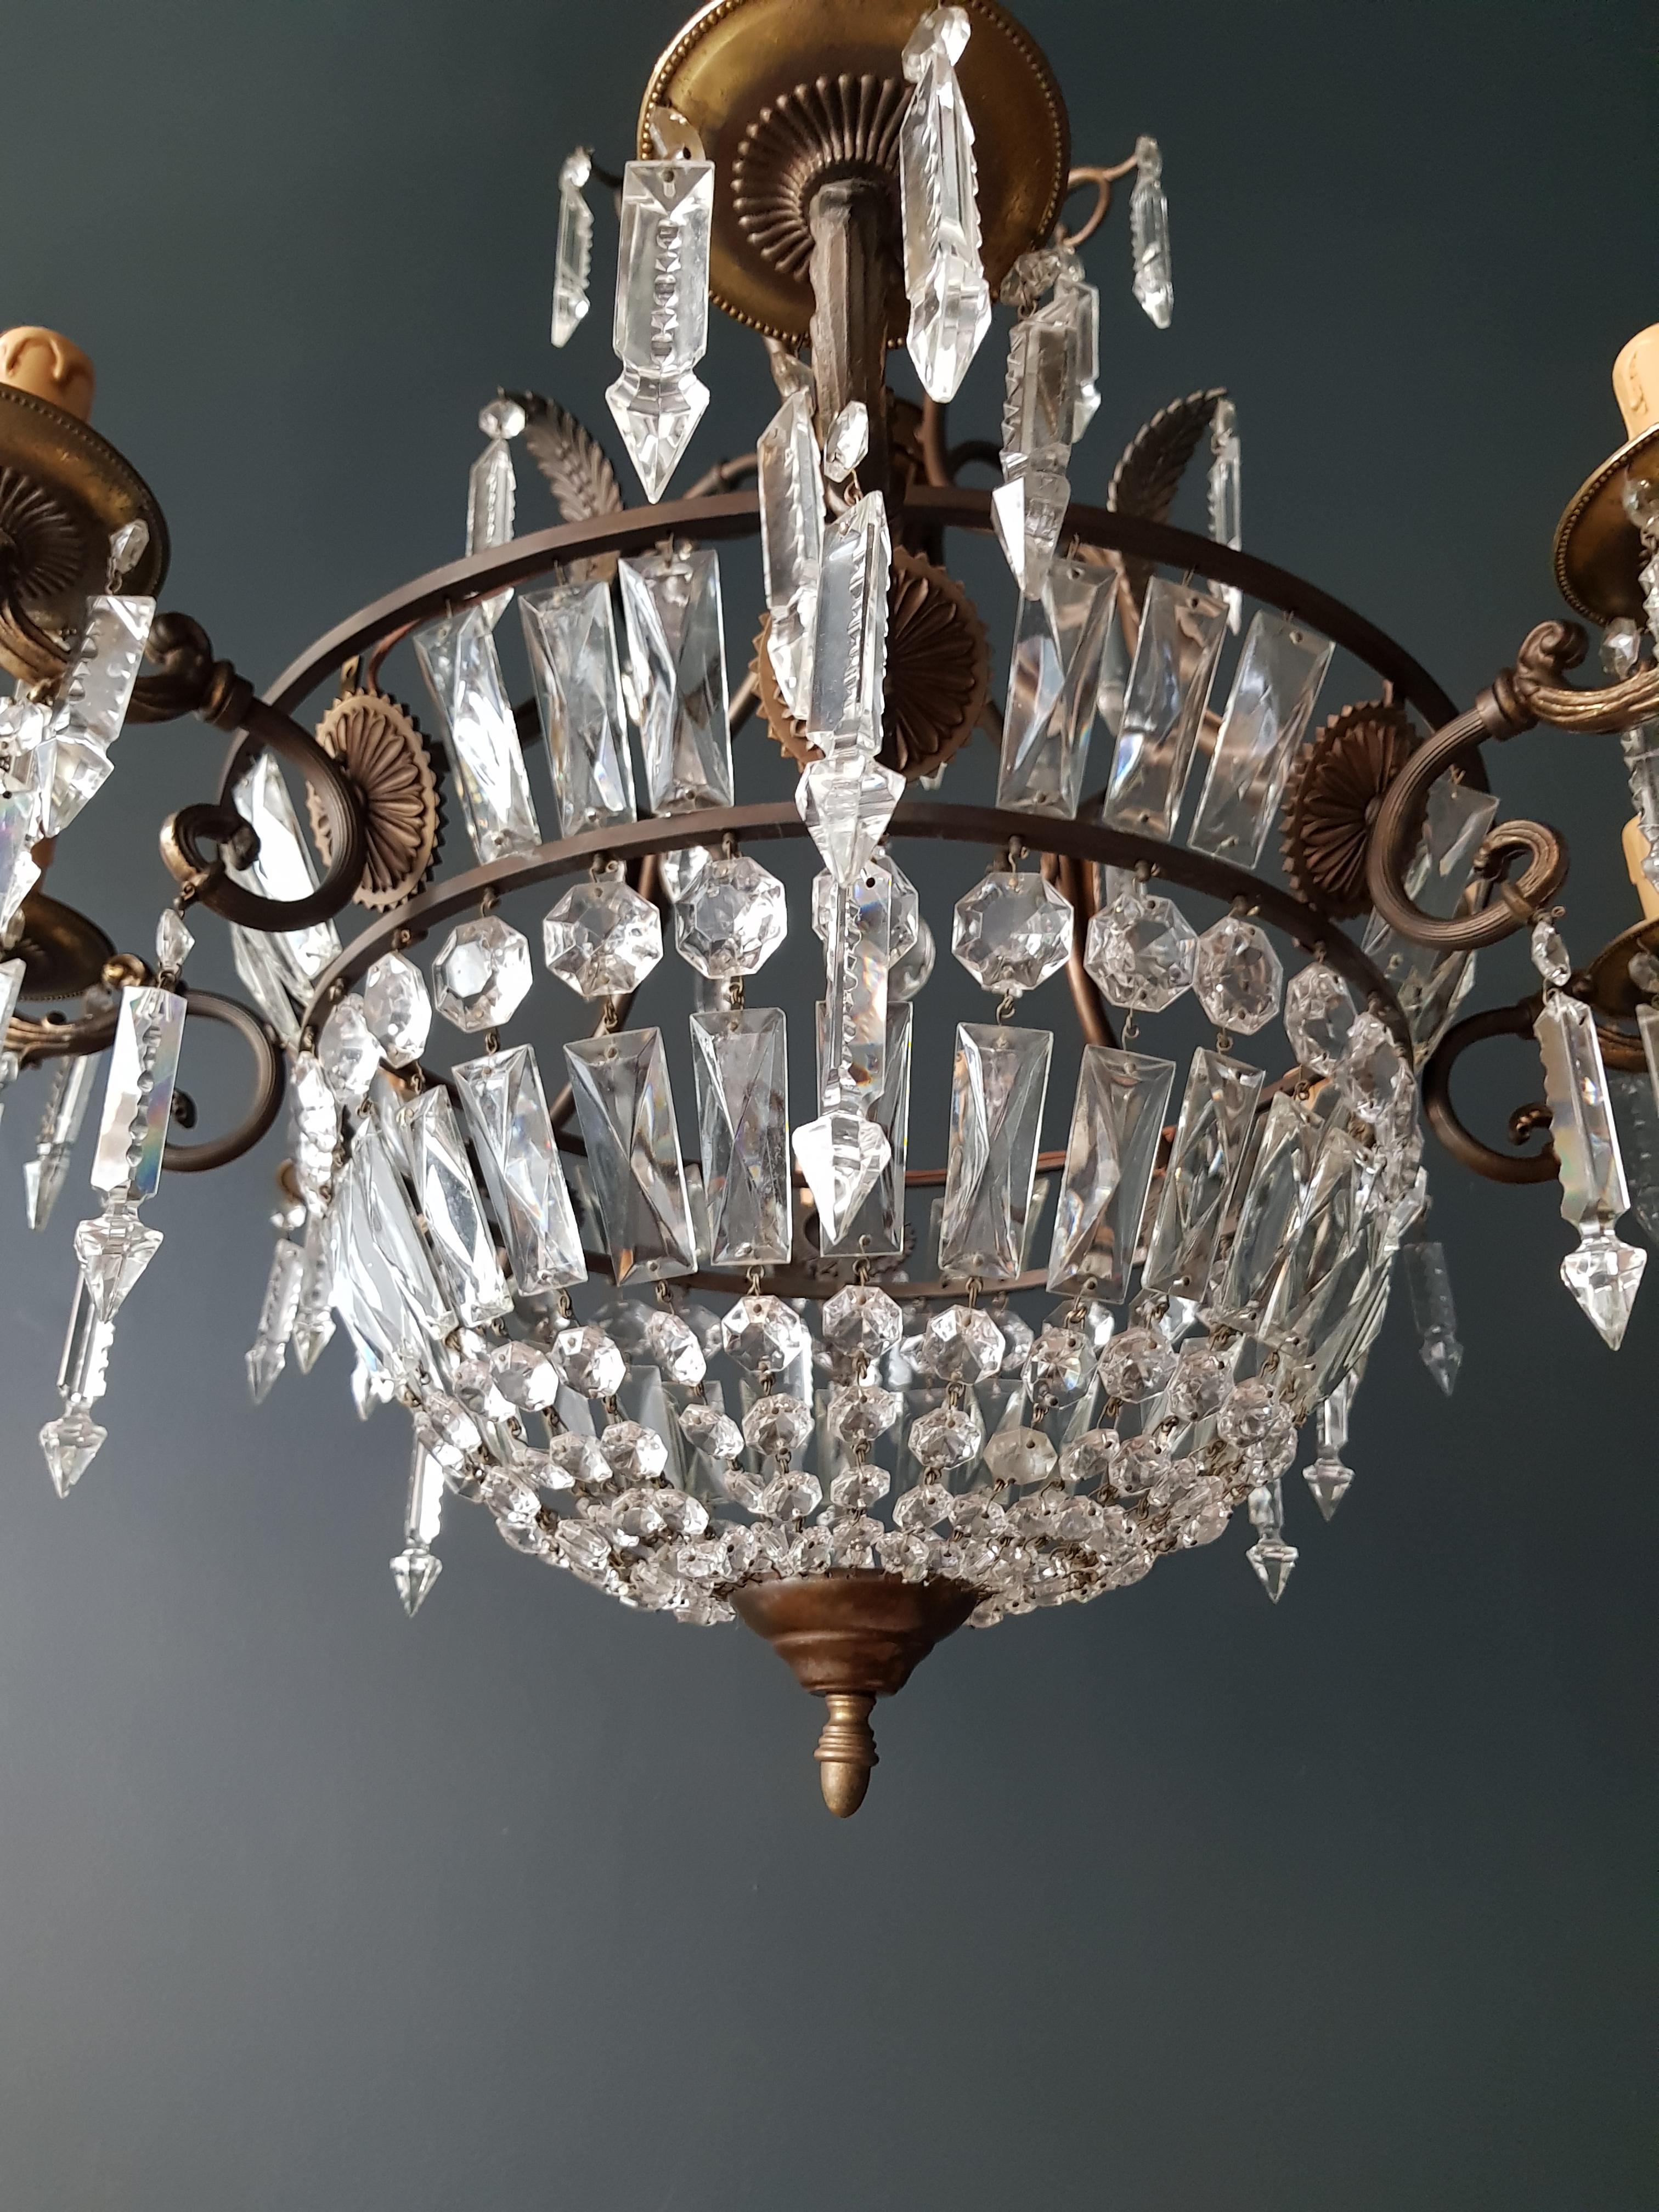 European Basket Chandelier Brass Empire Crystal Lustre Ceiling Lamp Antique Art Nouveau